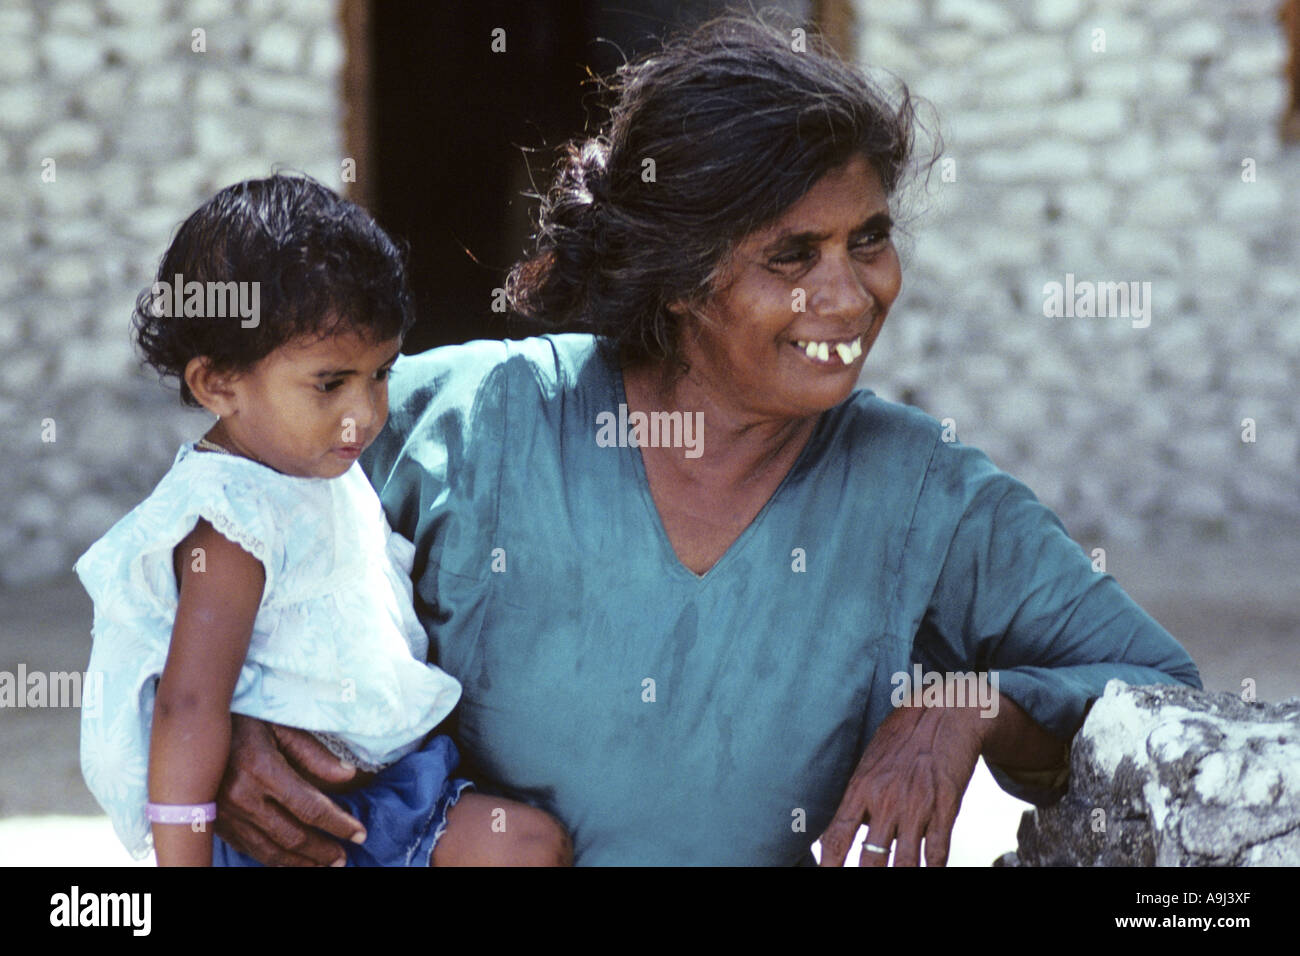 woman and child, Maldives Stock Photo